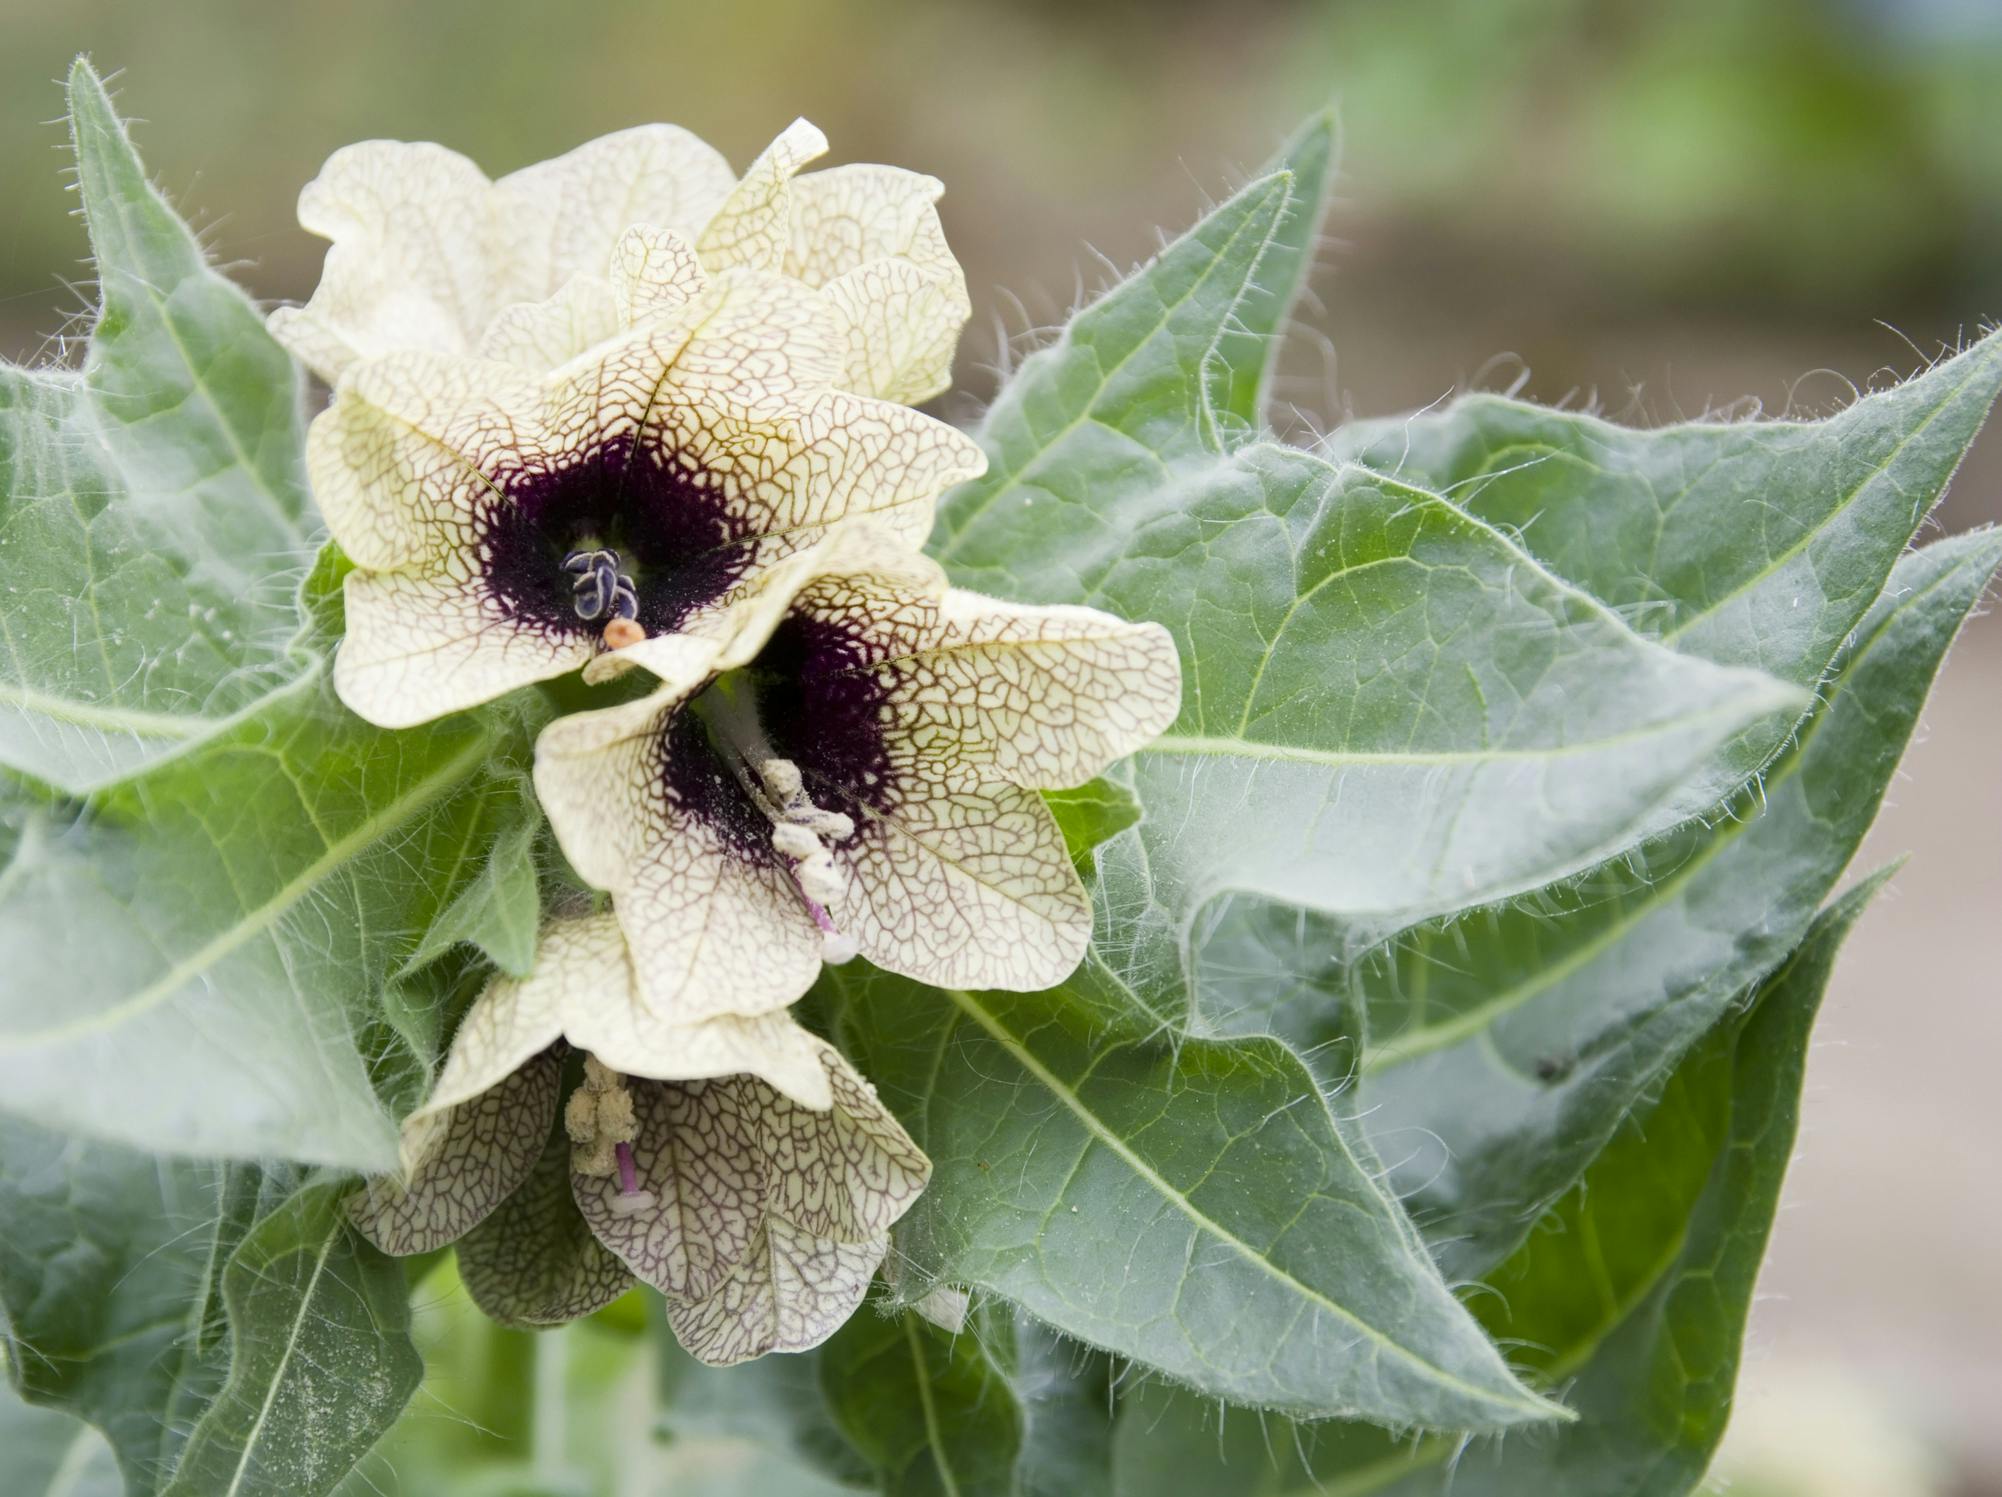 Bulmeurt er en fin plante, der har sammenvoksede, lysebrune kronblade med lilla filigranmønster på.